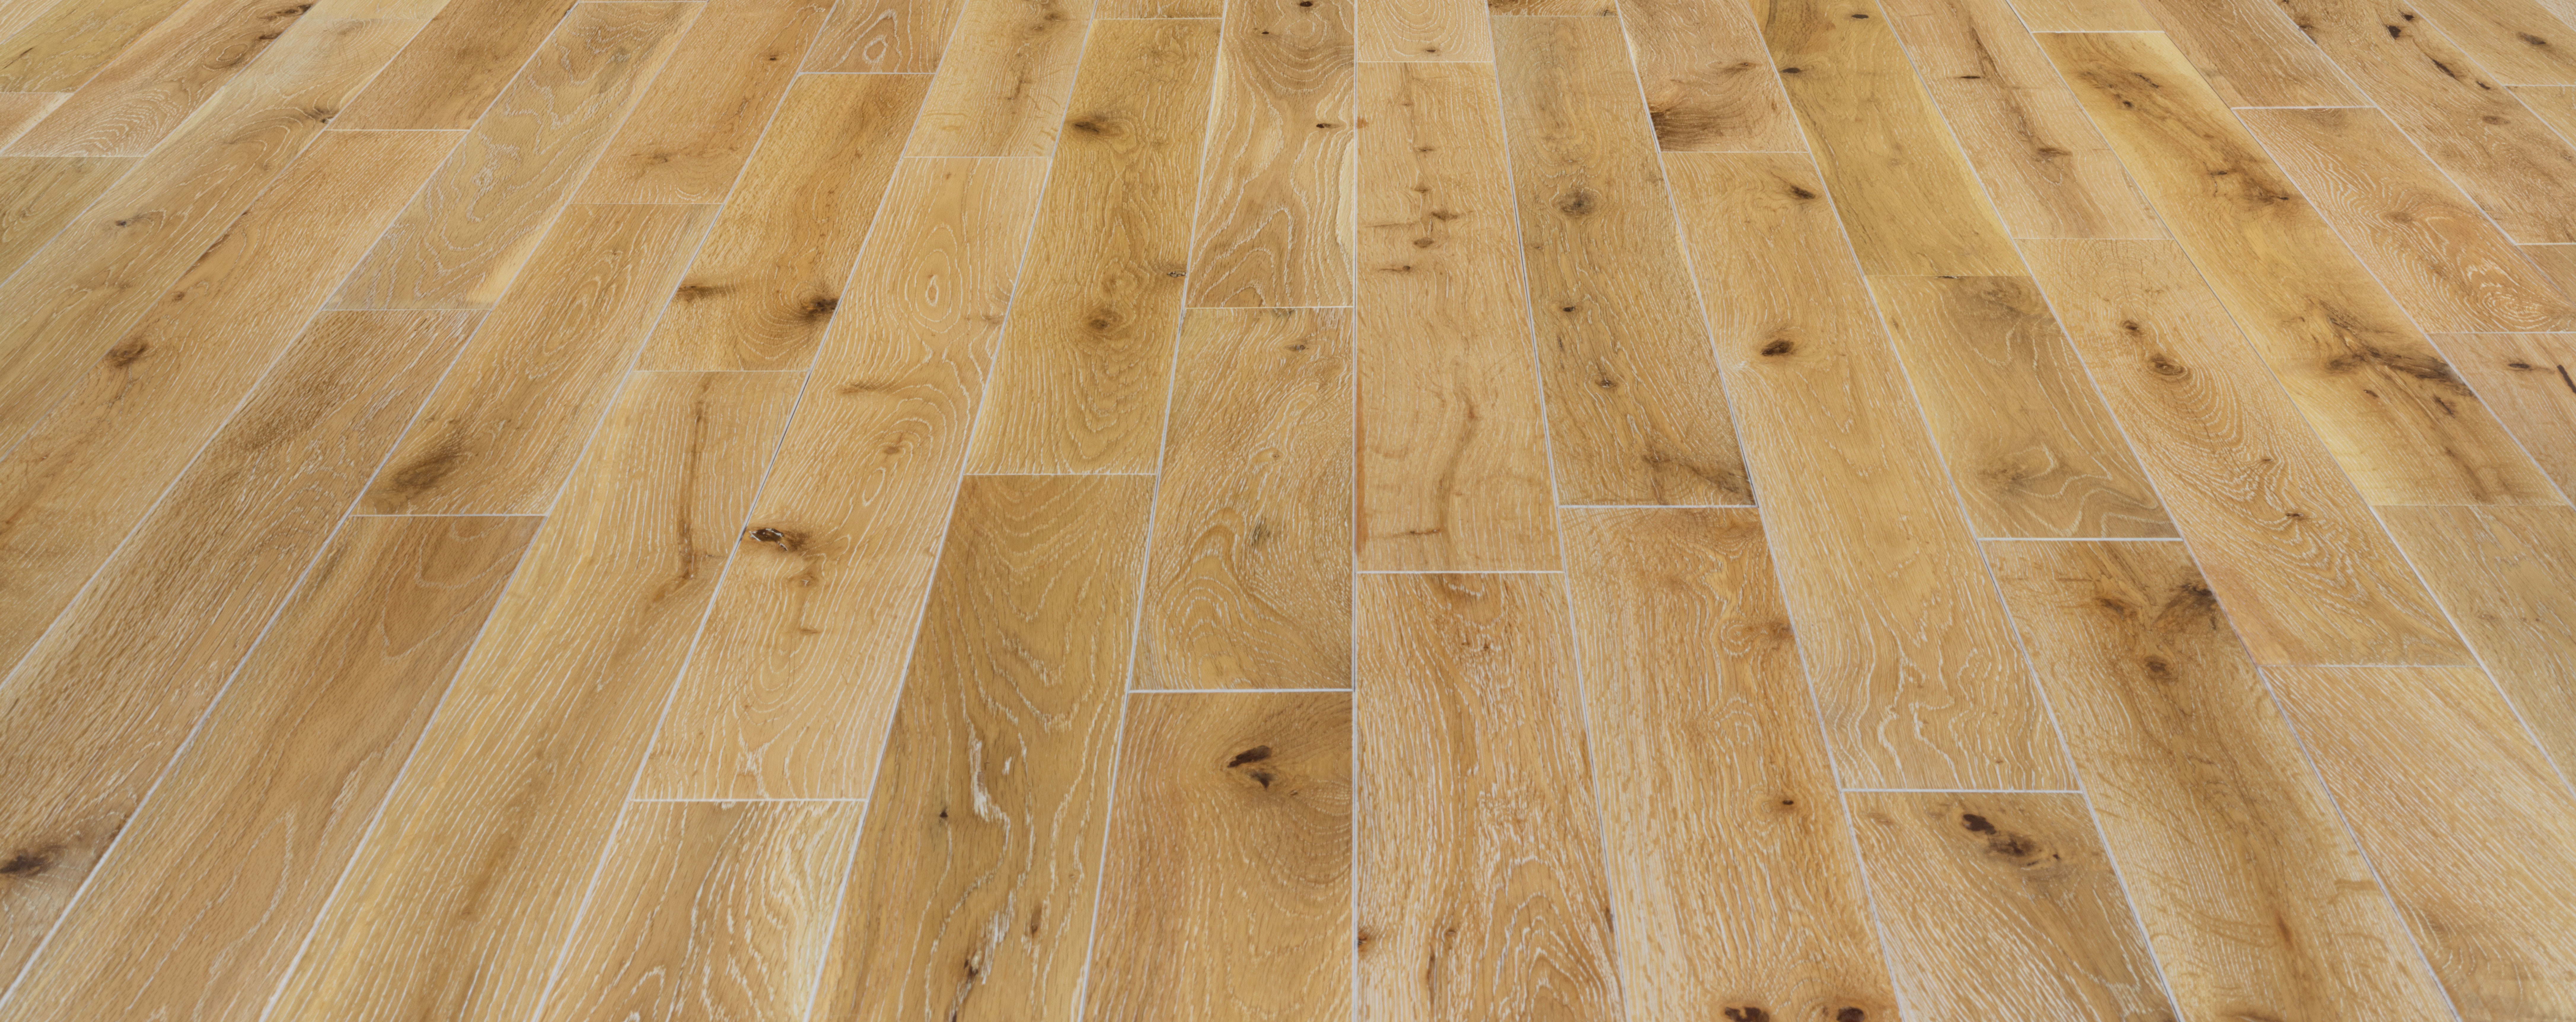 how to install 3 4 hardwood flooring of harbor oak 3 1 2″ white oak white washed etx surfaces inside etx surfaces harbor oak white oak white washed wood flooring